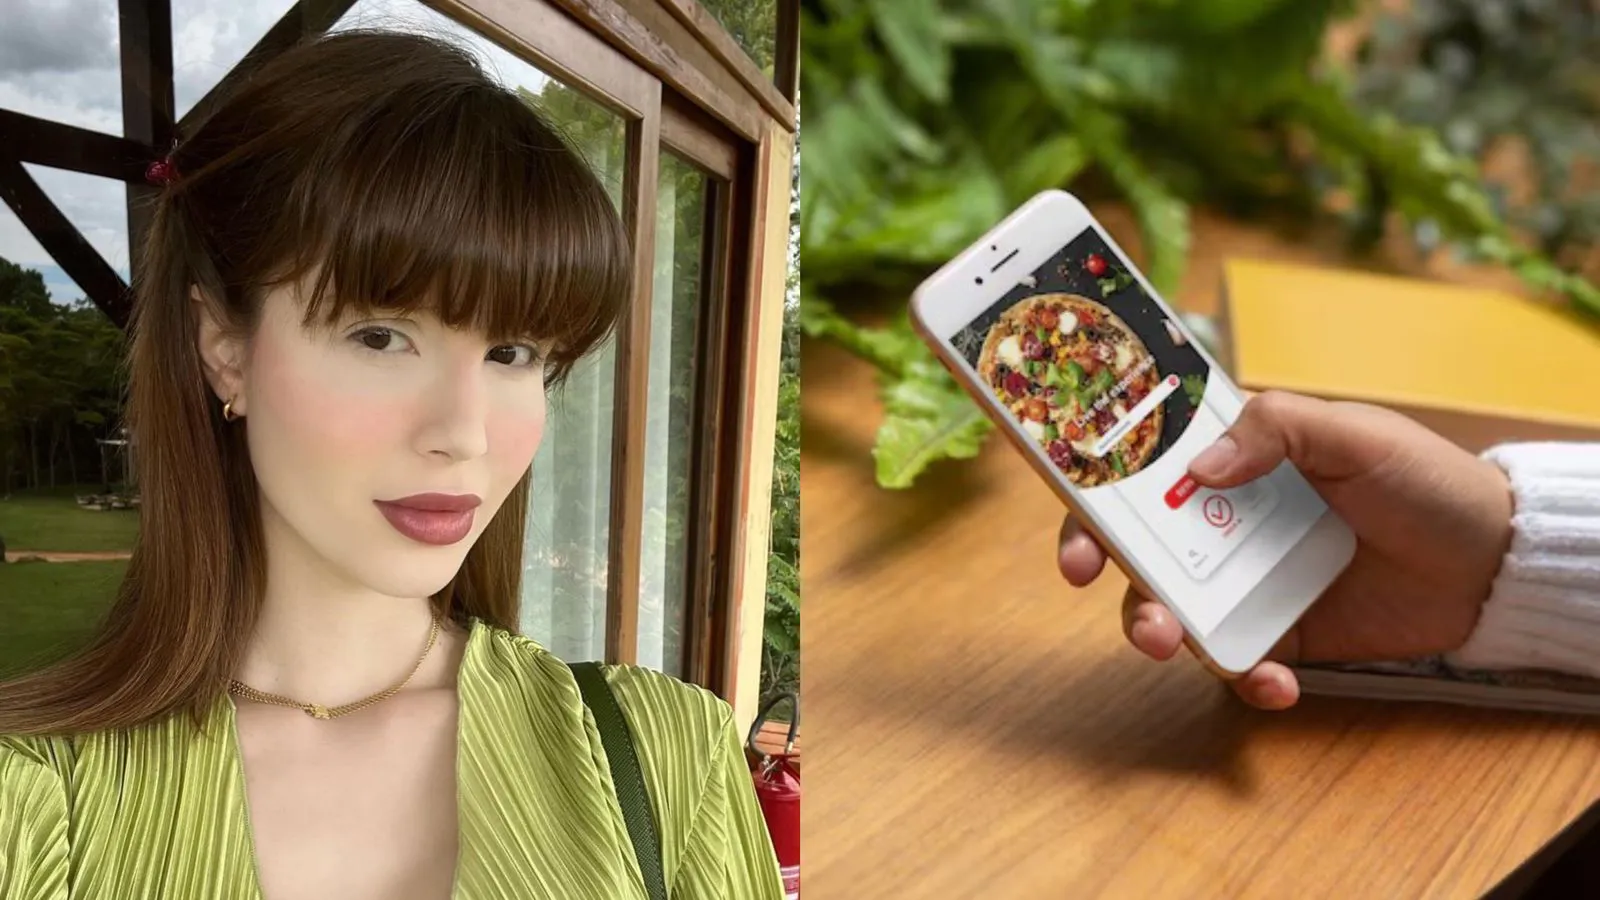 Sabrina Low revelou que descobriu a traição do namorado através de um aplicativo de comida